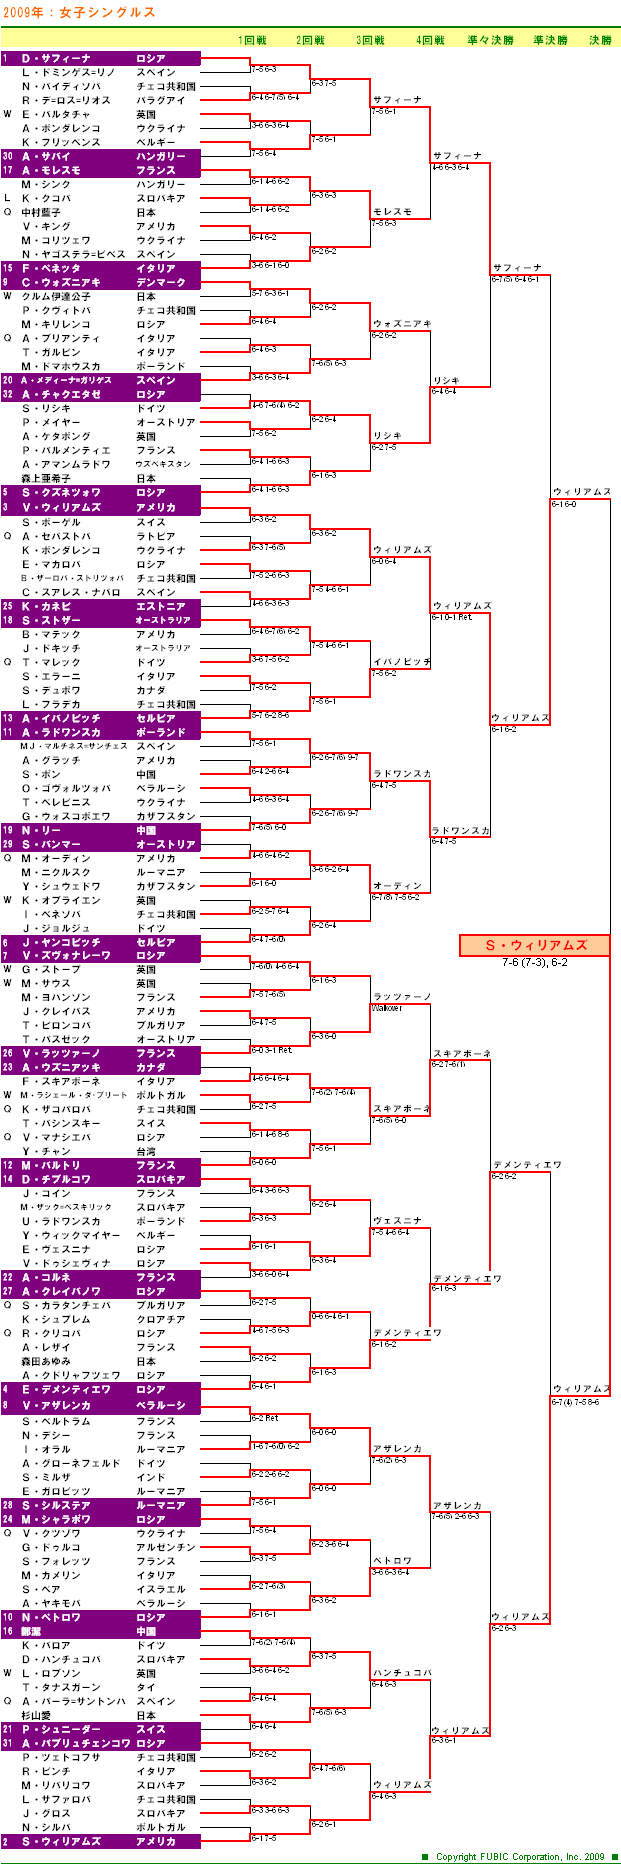 ウィンブルドンテニス2009　女子シングルスドロー表